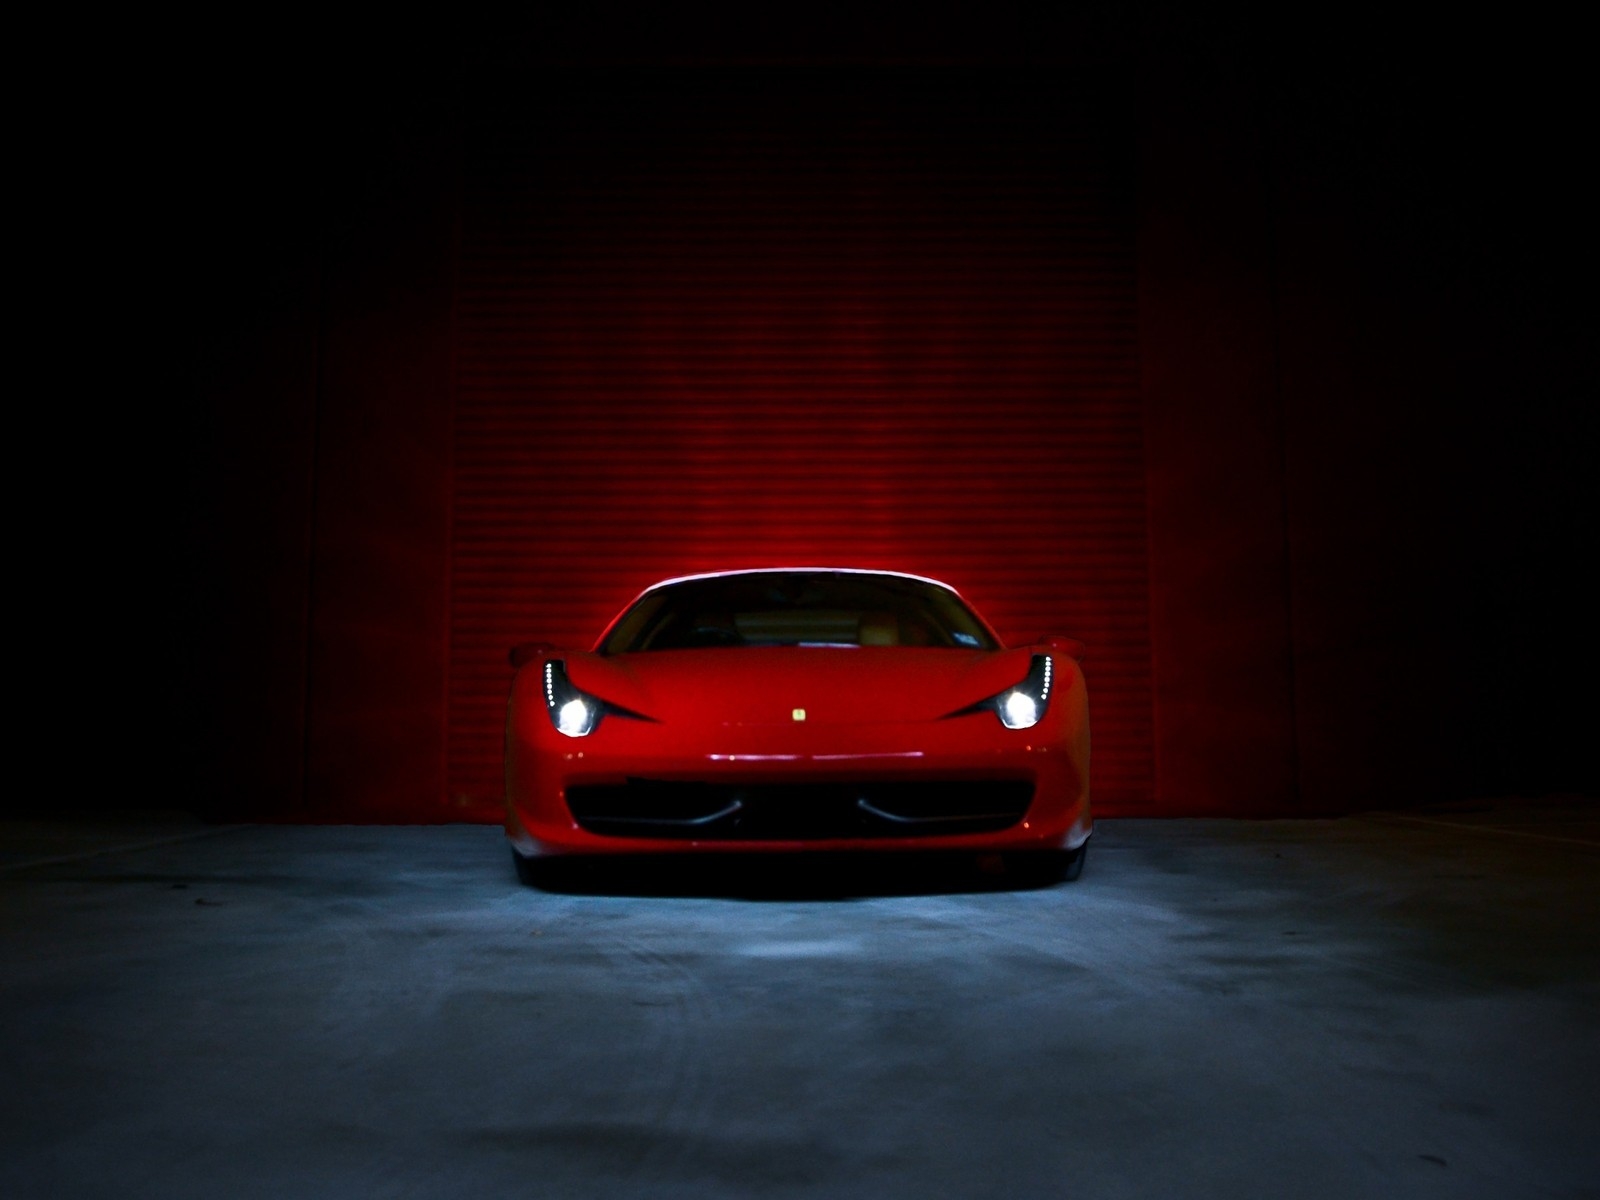 Ferrari 458 Italia Red  for 1600 x 1200 resolution